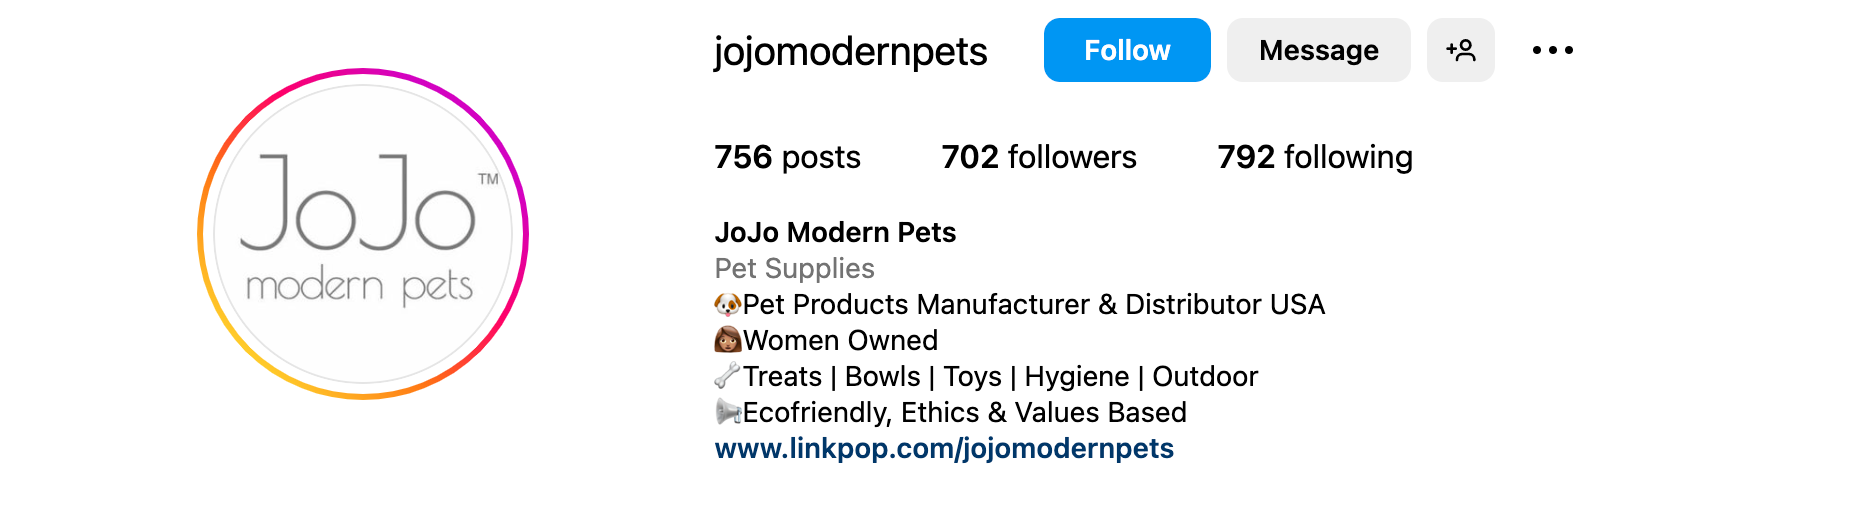 Instagram bio ideas - Jojo Modern pets